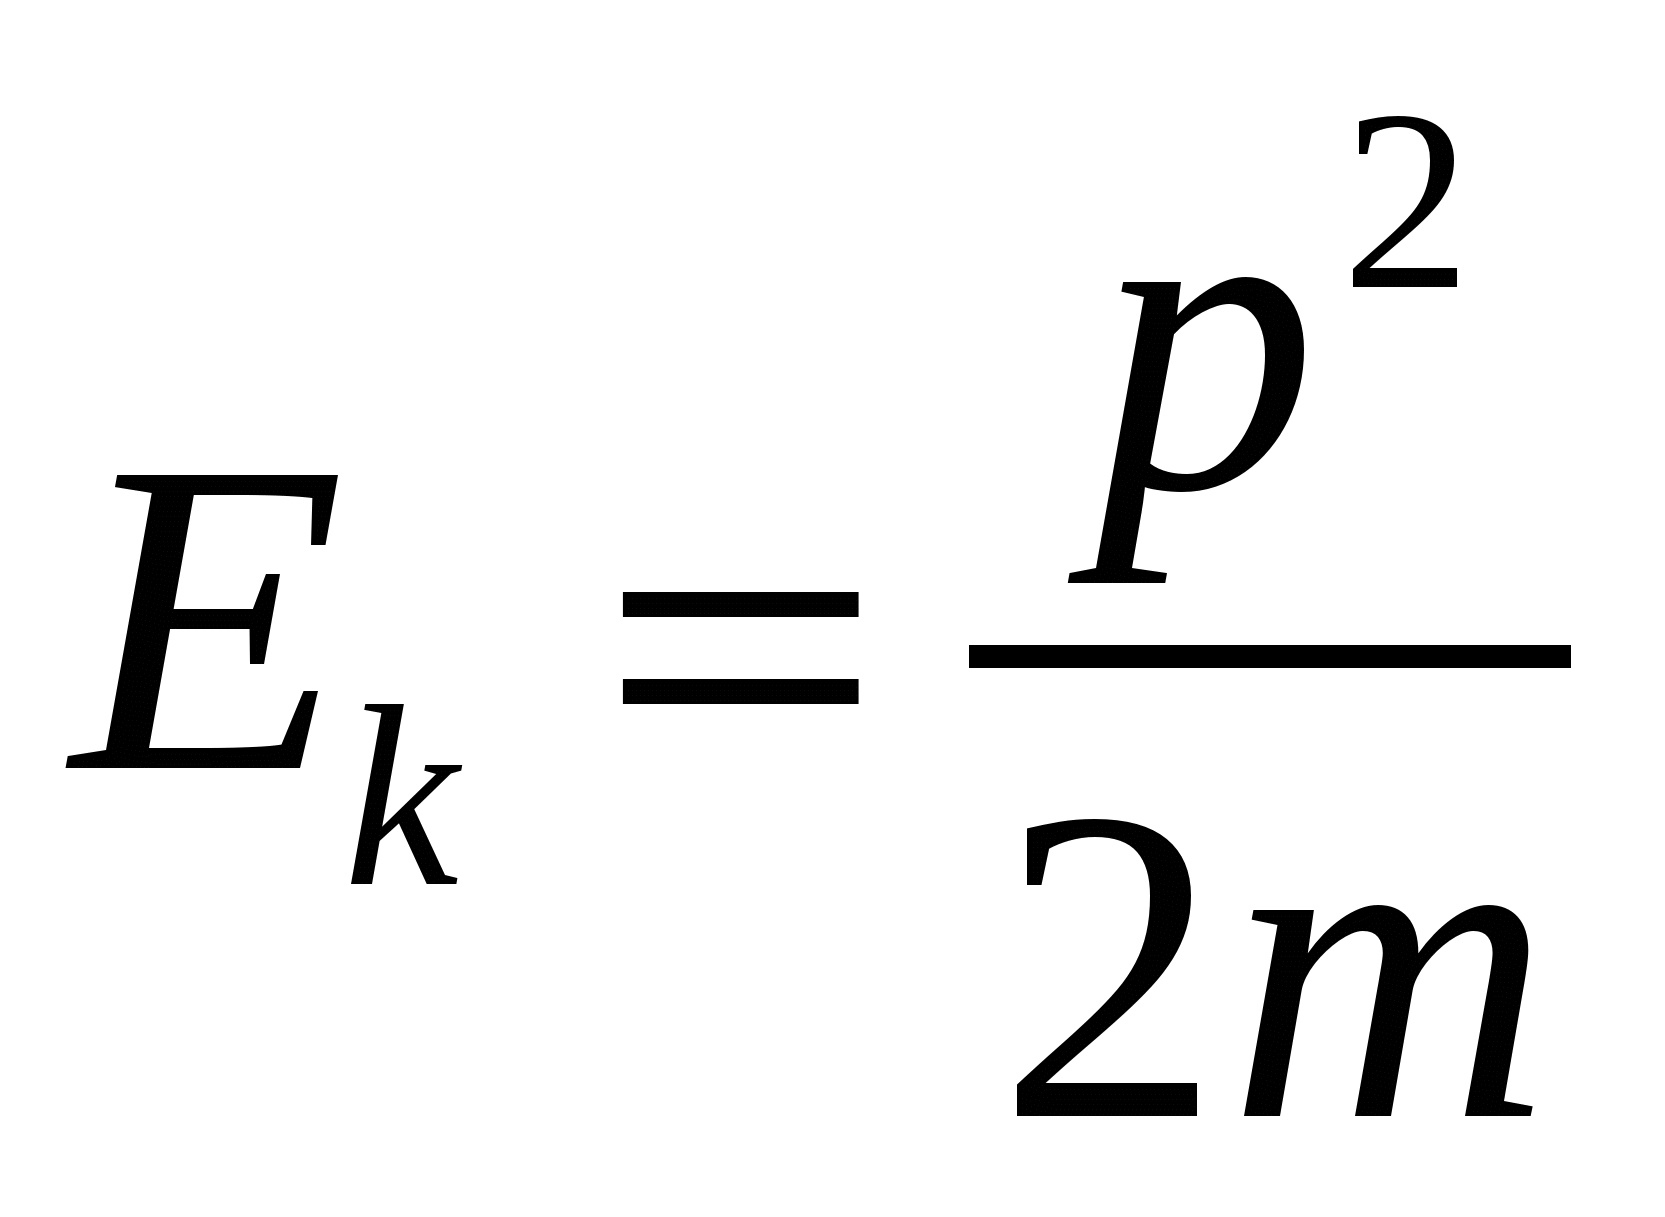 Кинетическая энергия Протона формула. Формула кинетической энергии через Импульс. Энергия Протона. Ыоомулс кинетич энергии Протона. Кинетическая энергия в вольты